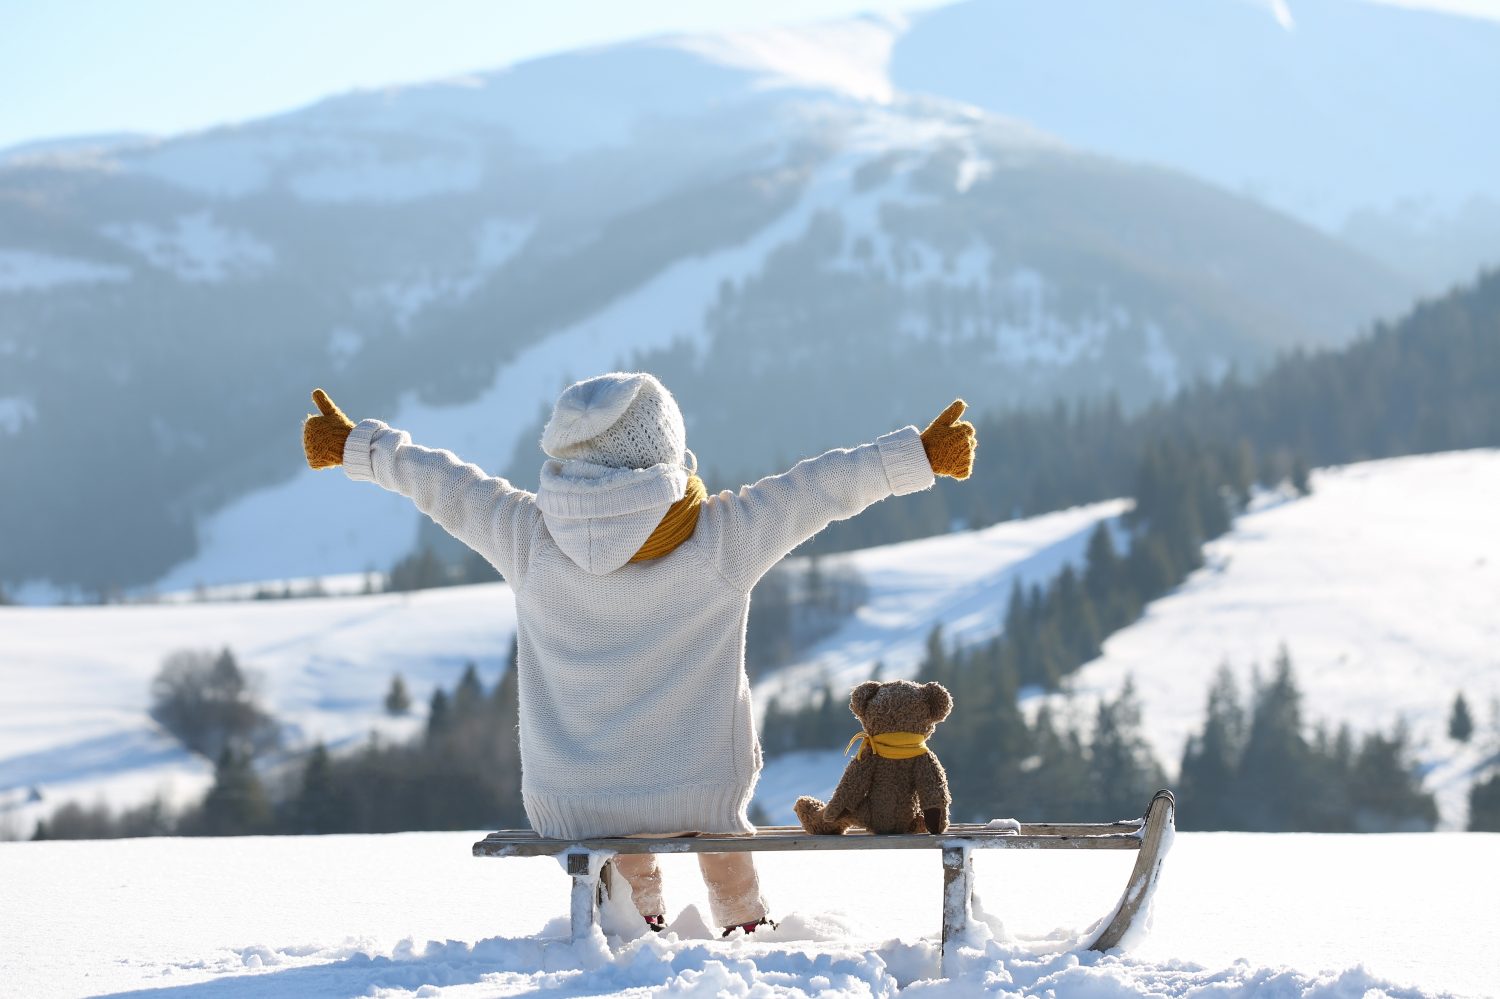 Il bambino con l'orsacchiotto giocattolo si siede su una slitta e guarda le montagne innevate invernali. Vacanze invernali in famiglia.  Celebrazione del Natale e vacanze invernali.  Divertimento invernale e attività all'aria aperta con i bambini